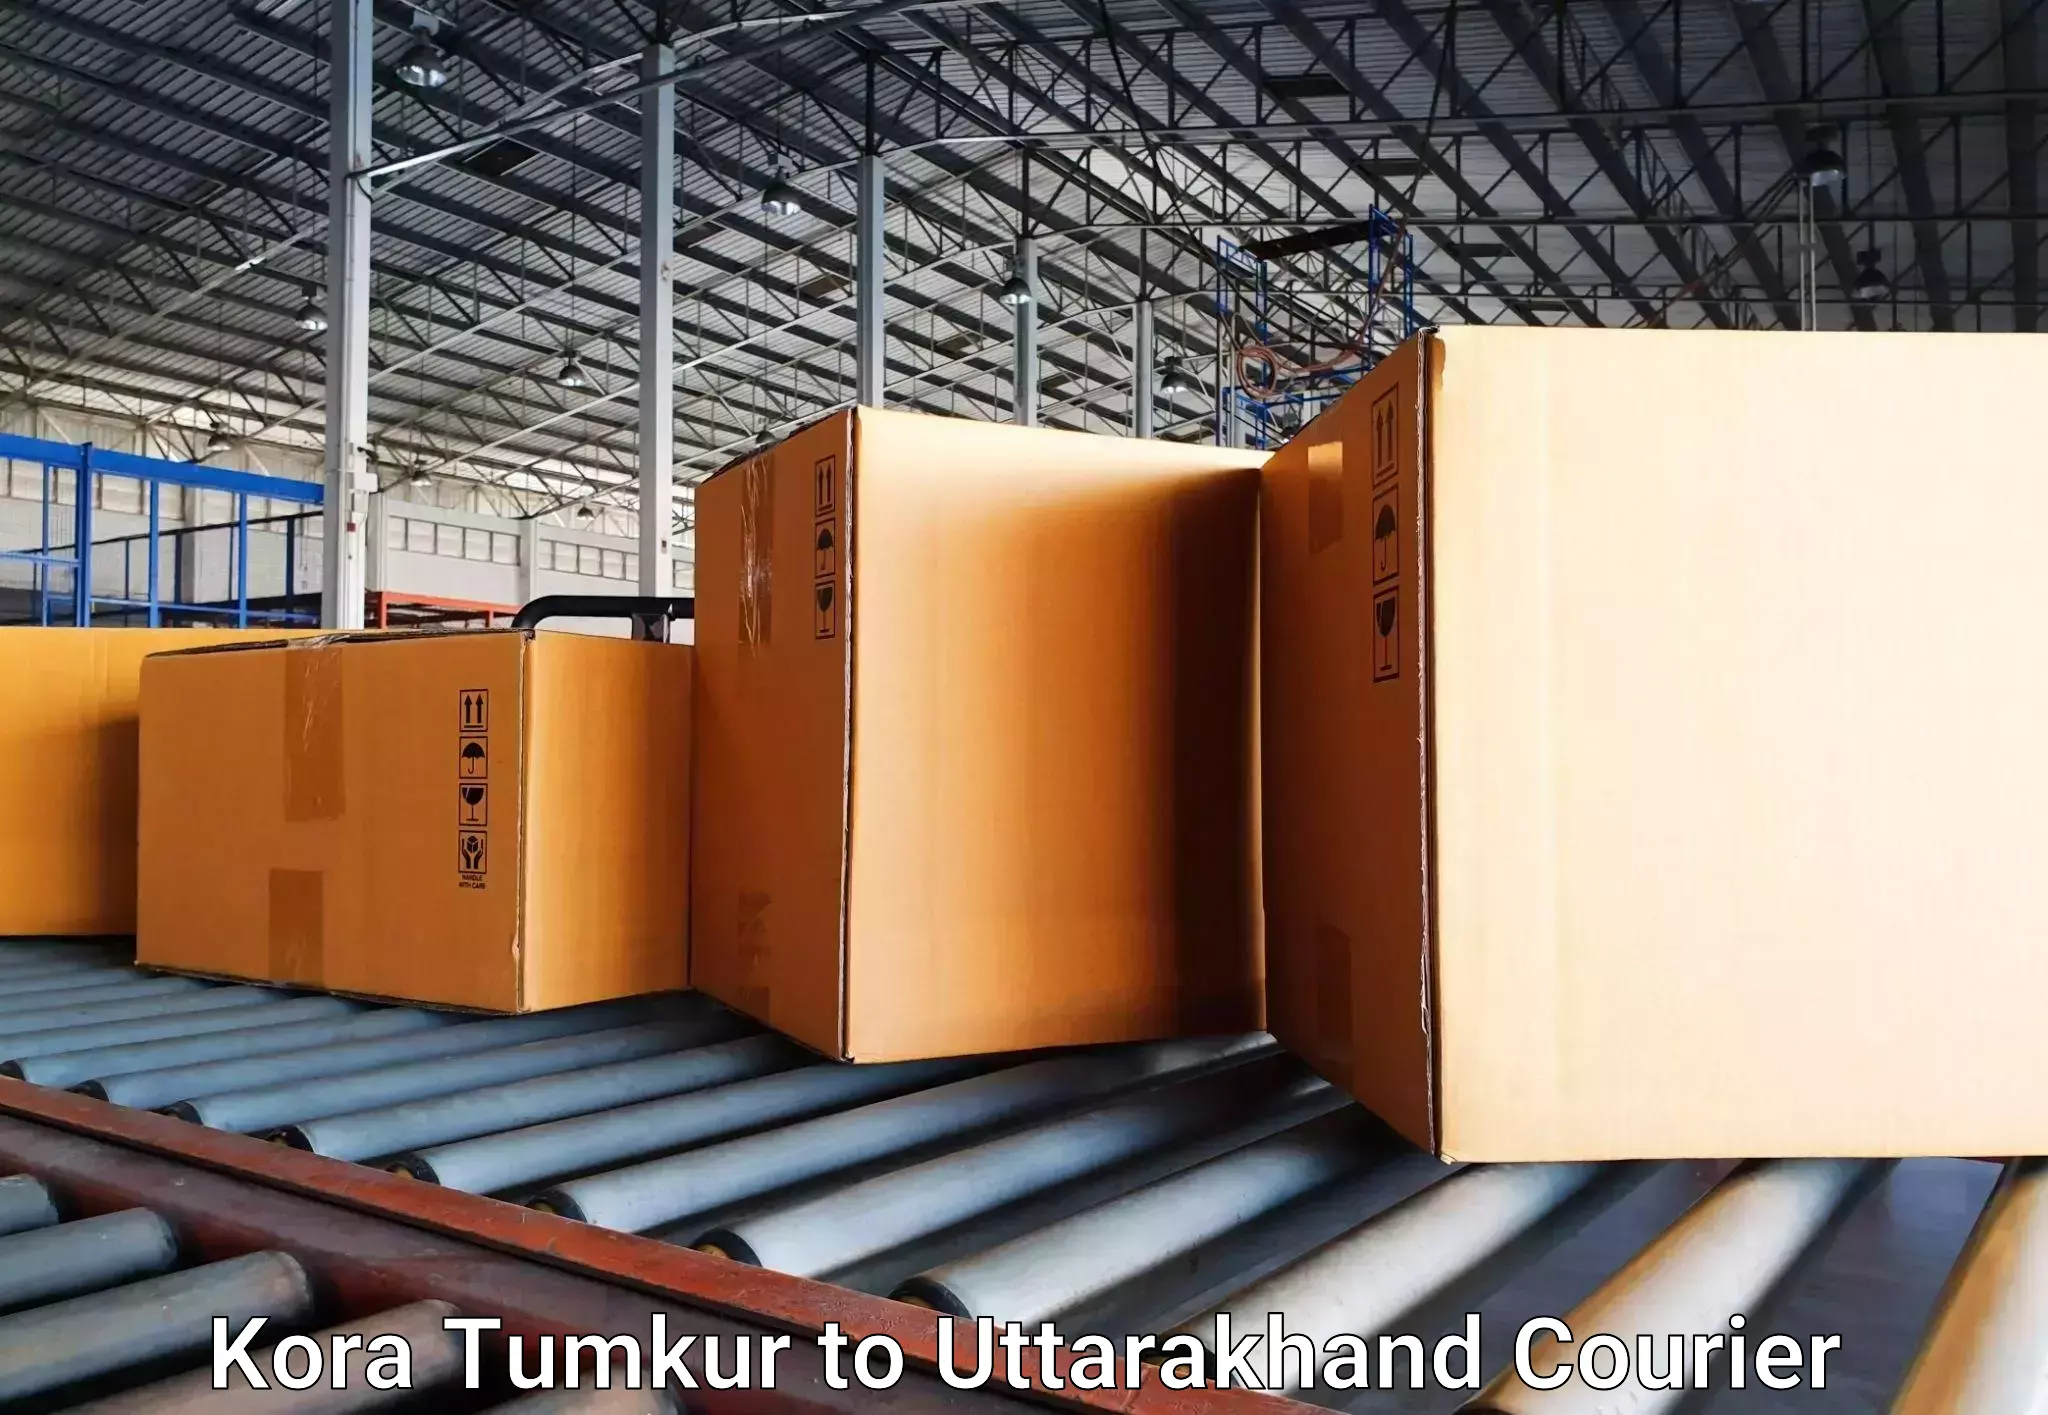 Luggage transport operations Kora Tumkur to NIT Garhwal